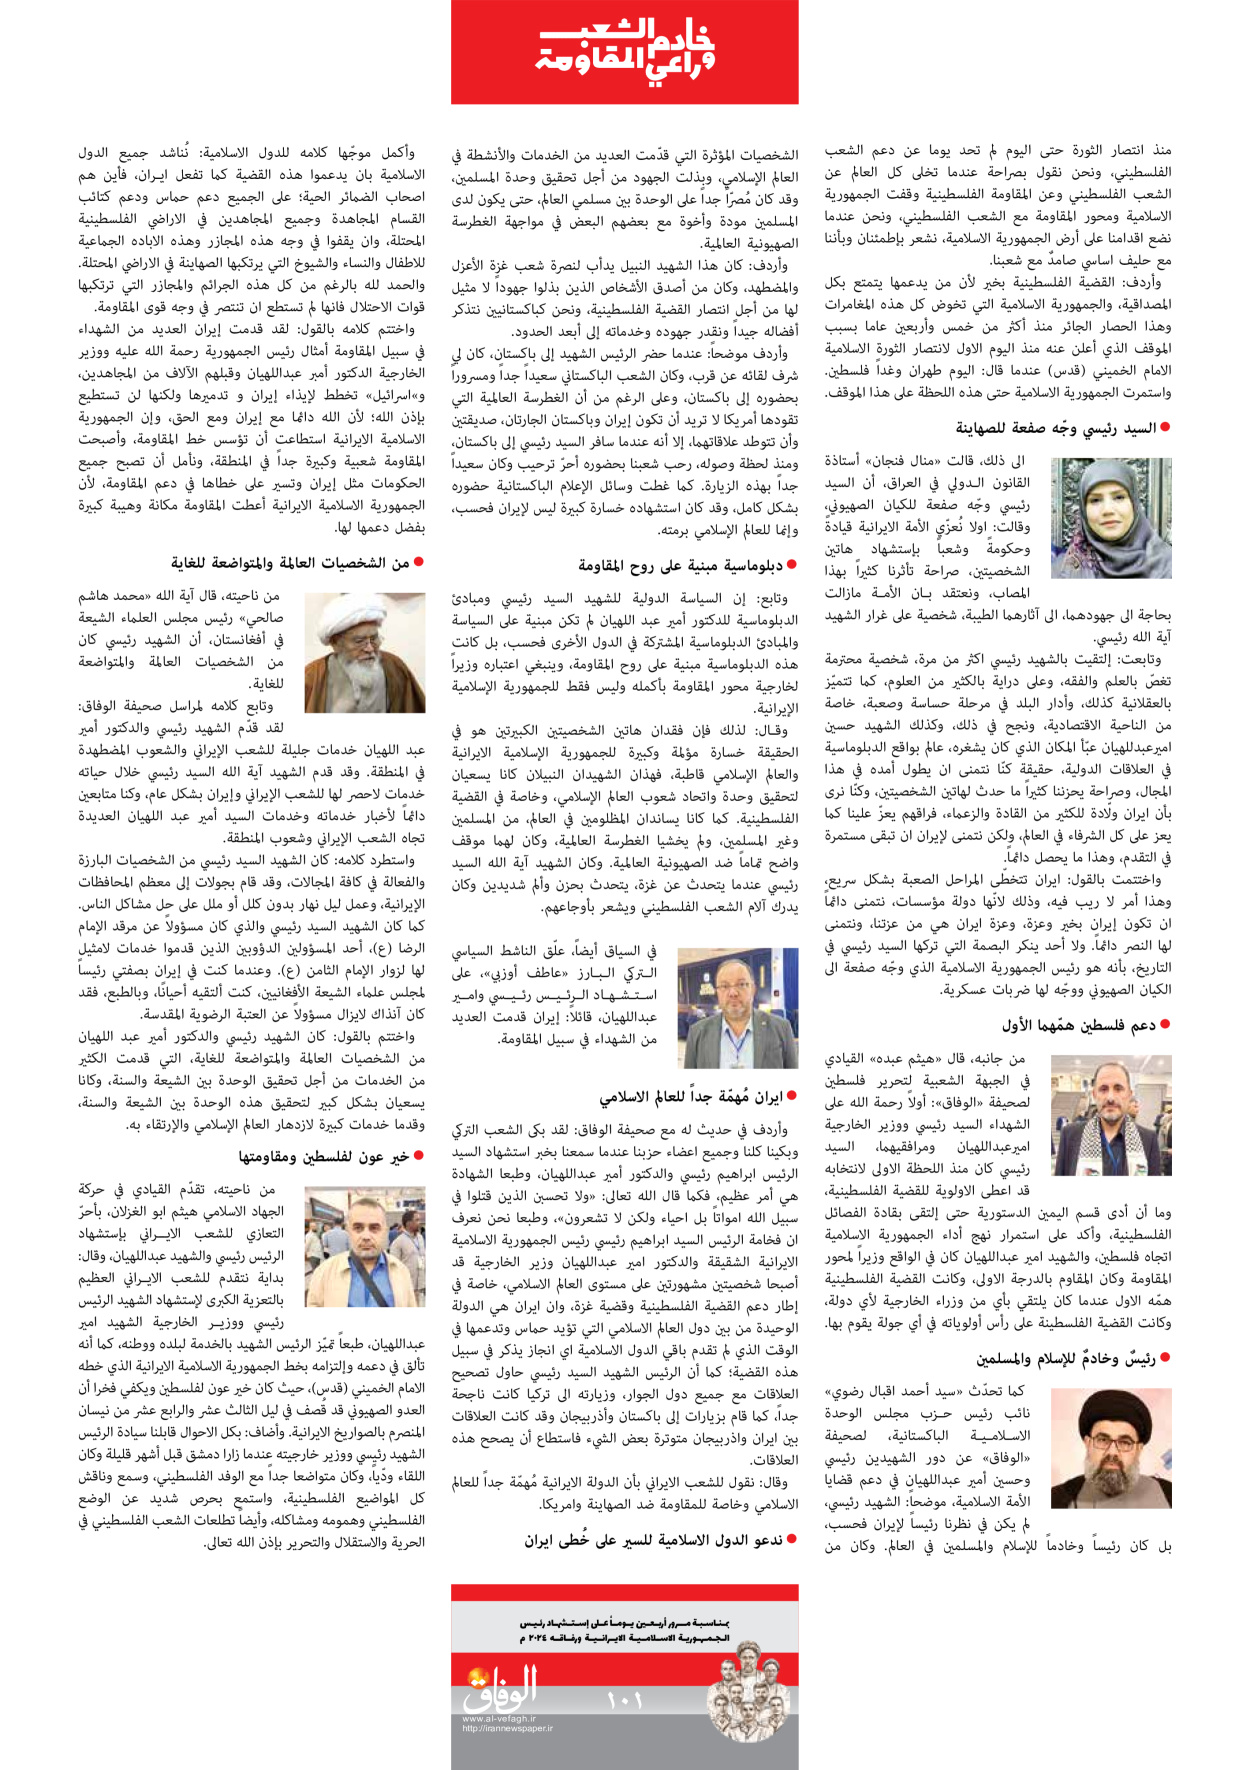 صحیفة ایران الدولیة الوفاق - ملحق ویژه نامه چهلم شهید رییسی - ٢٩ يونيو ٢٠٢٤ - الصفحة ۱۰۰